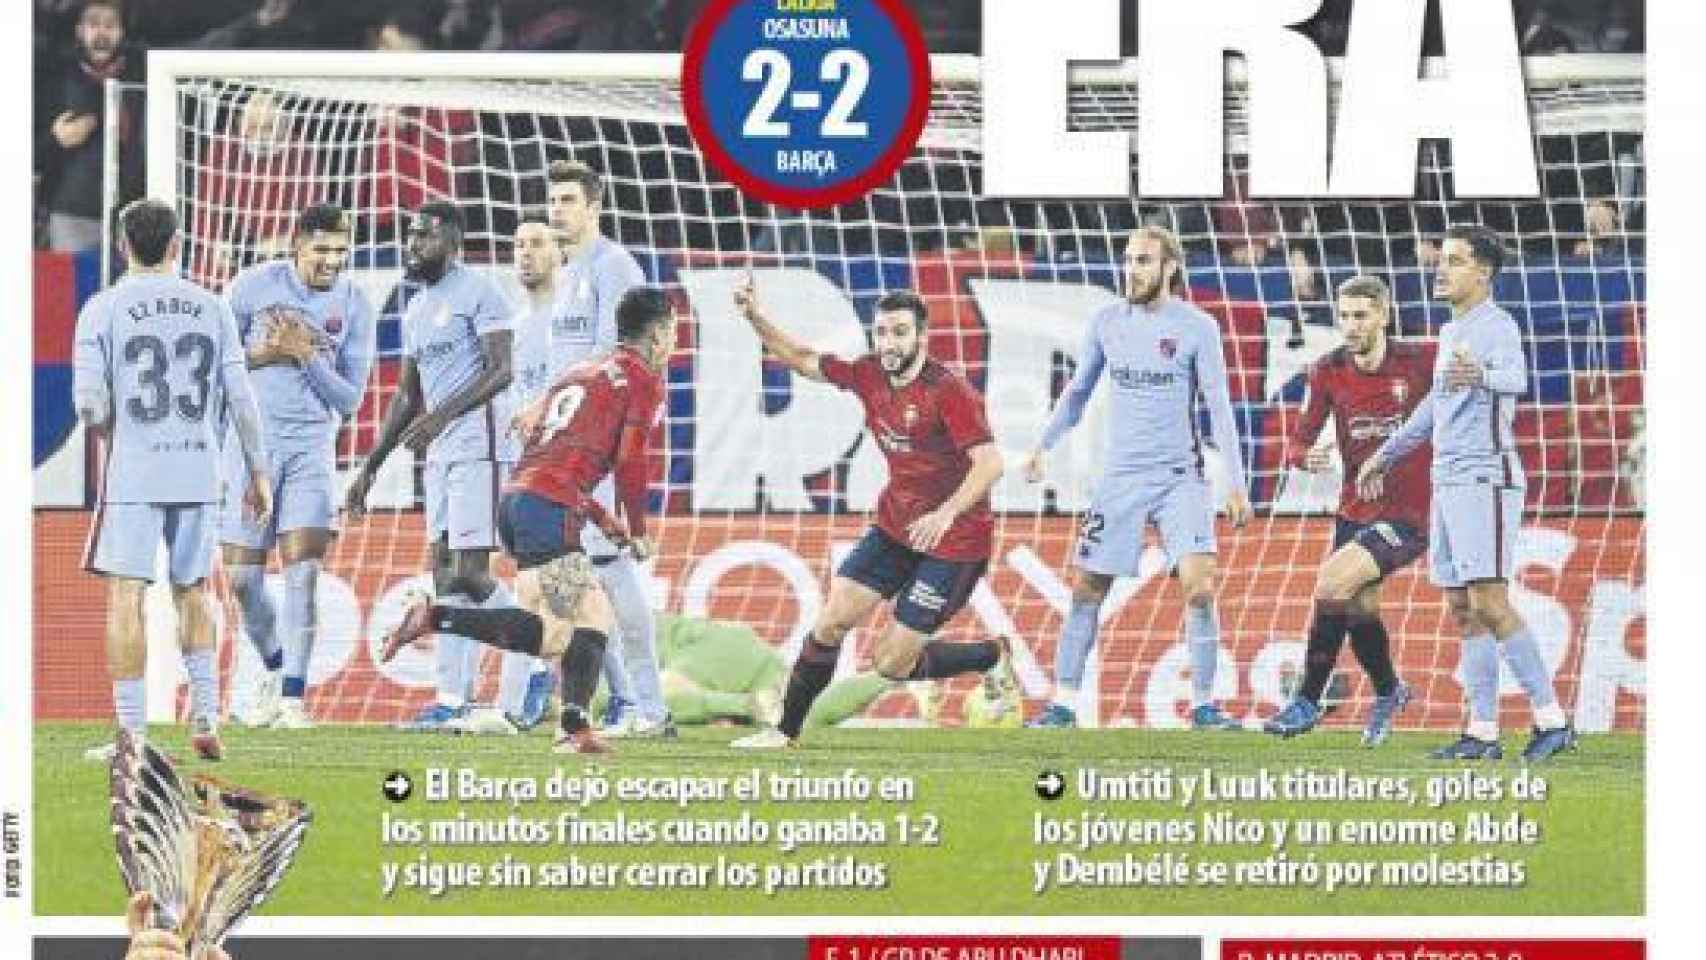 La portada del diario Mundo Deportivo (13/12/2021)